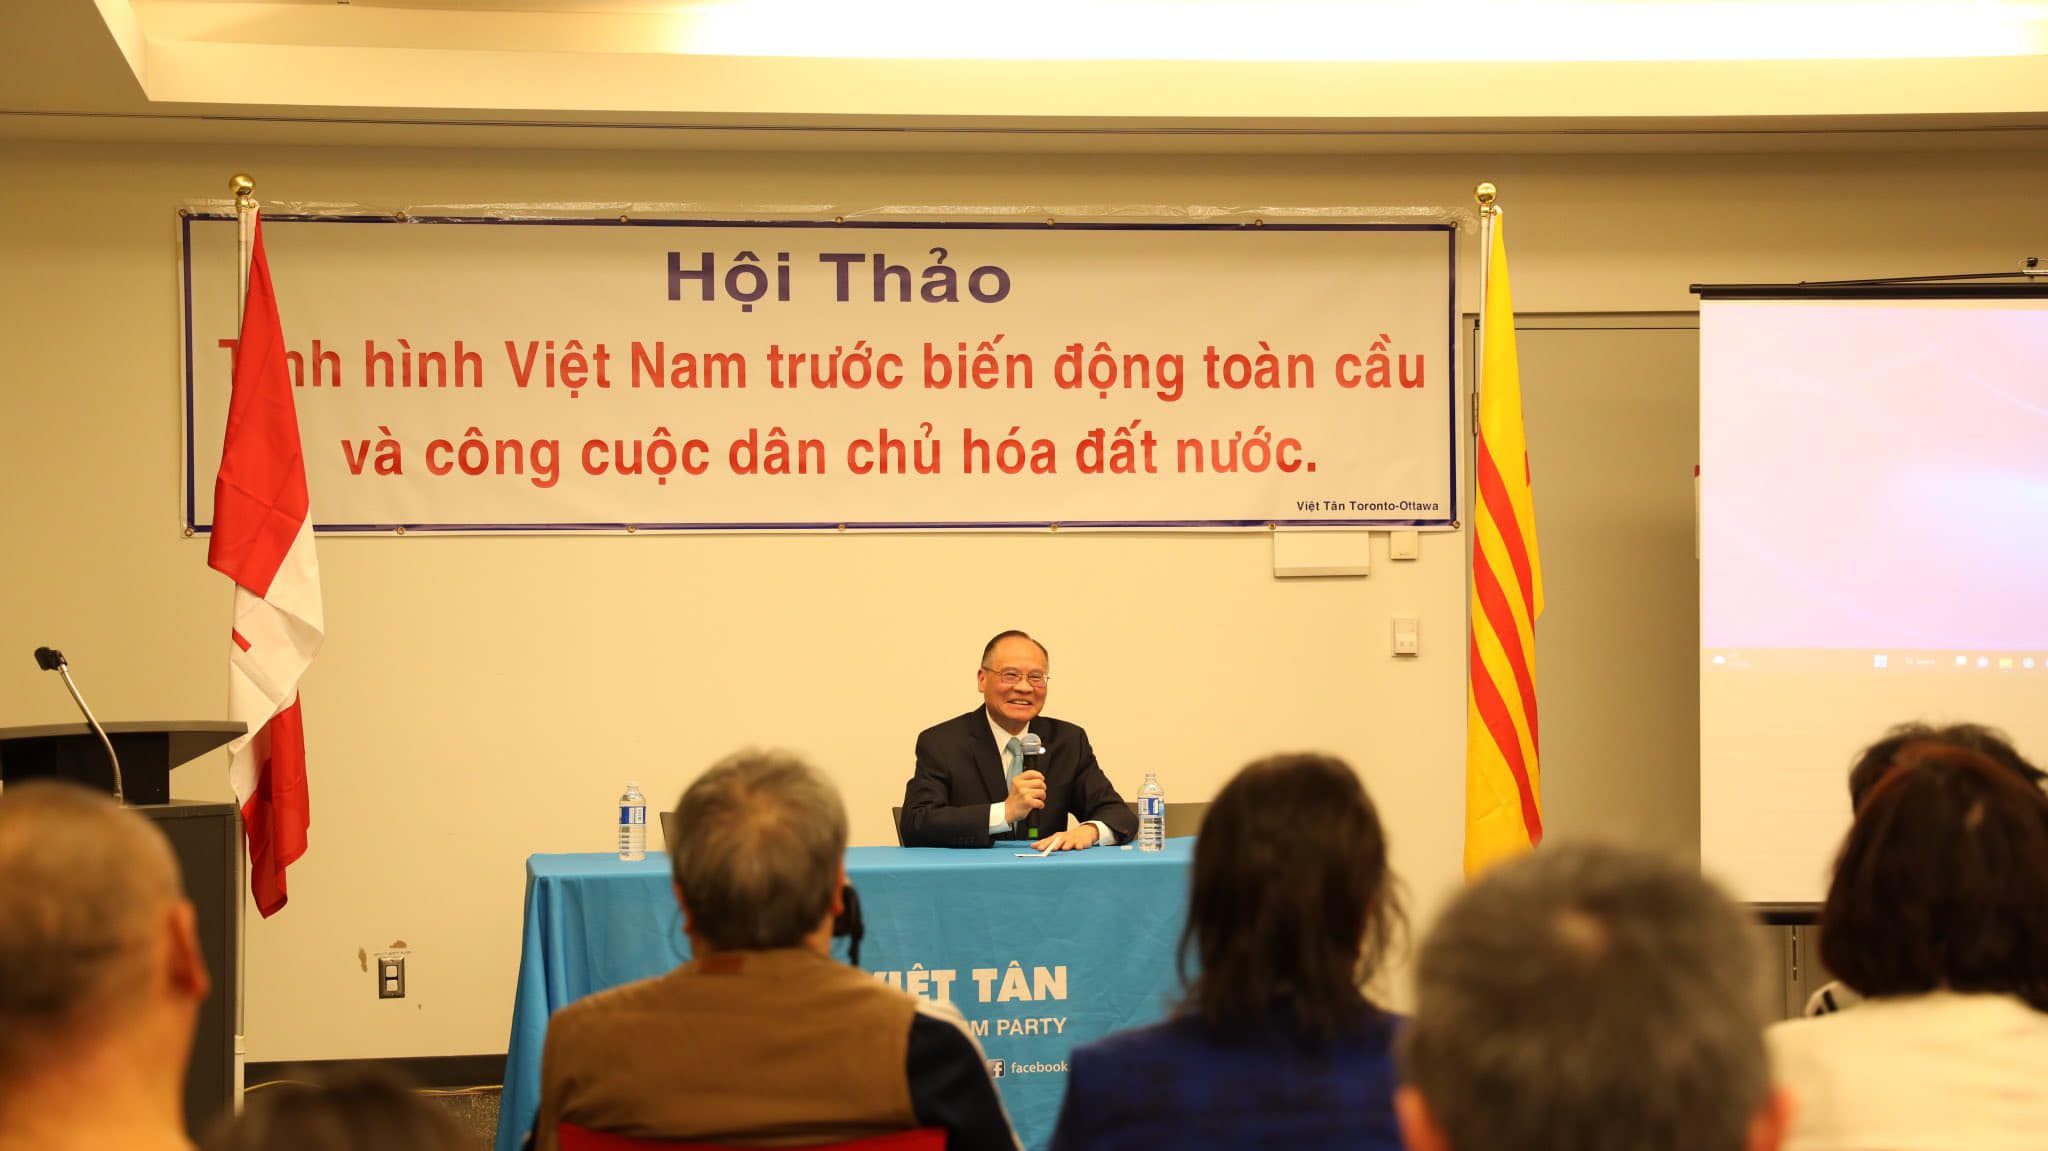 Ông Lý Thái Hùng, Chủ tịch đảng Việt Tân chia sẻ cùng cử tọa nhận định về tình hình hiện nay. Ảnh: Đảng bộ Toronto - Ottawa, Canada